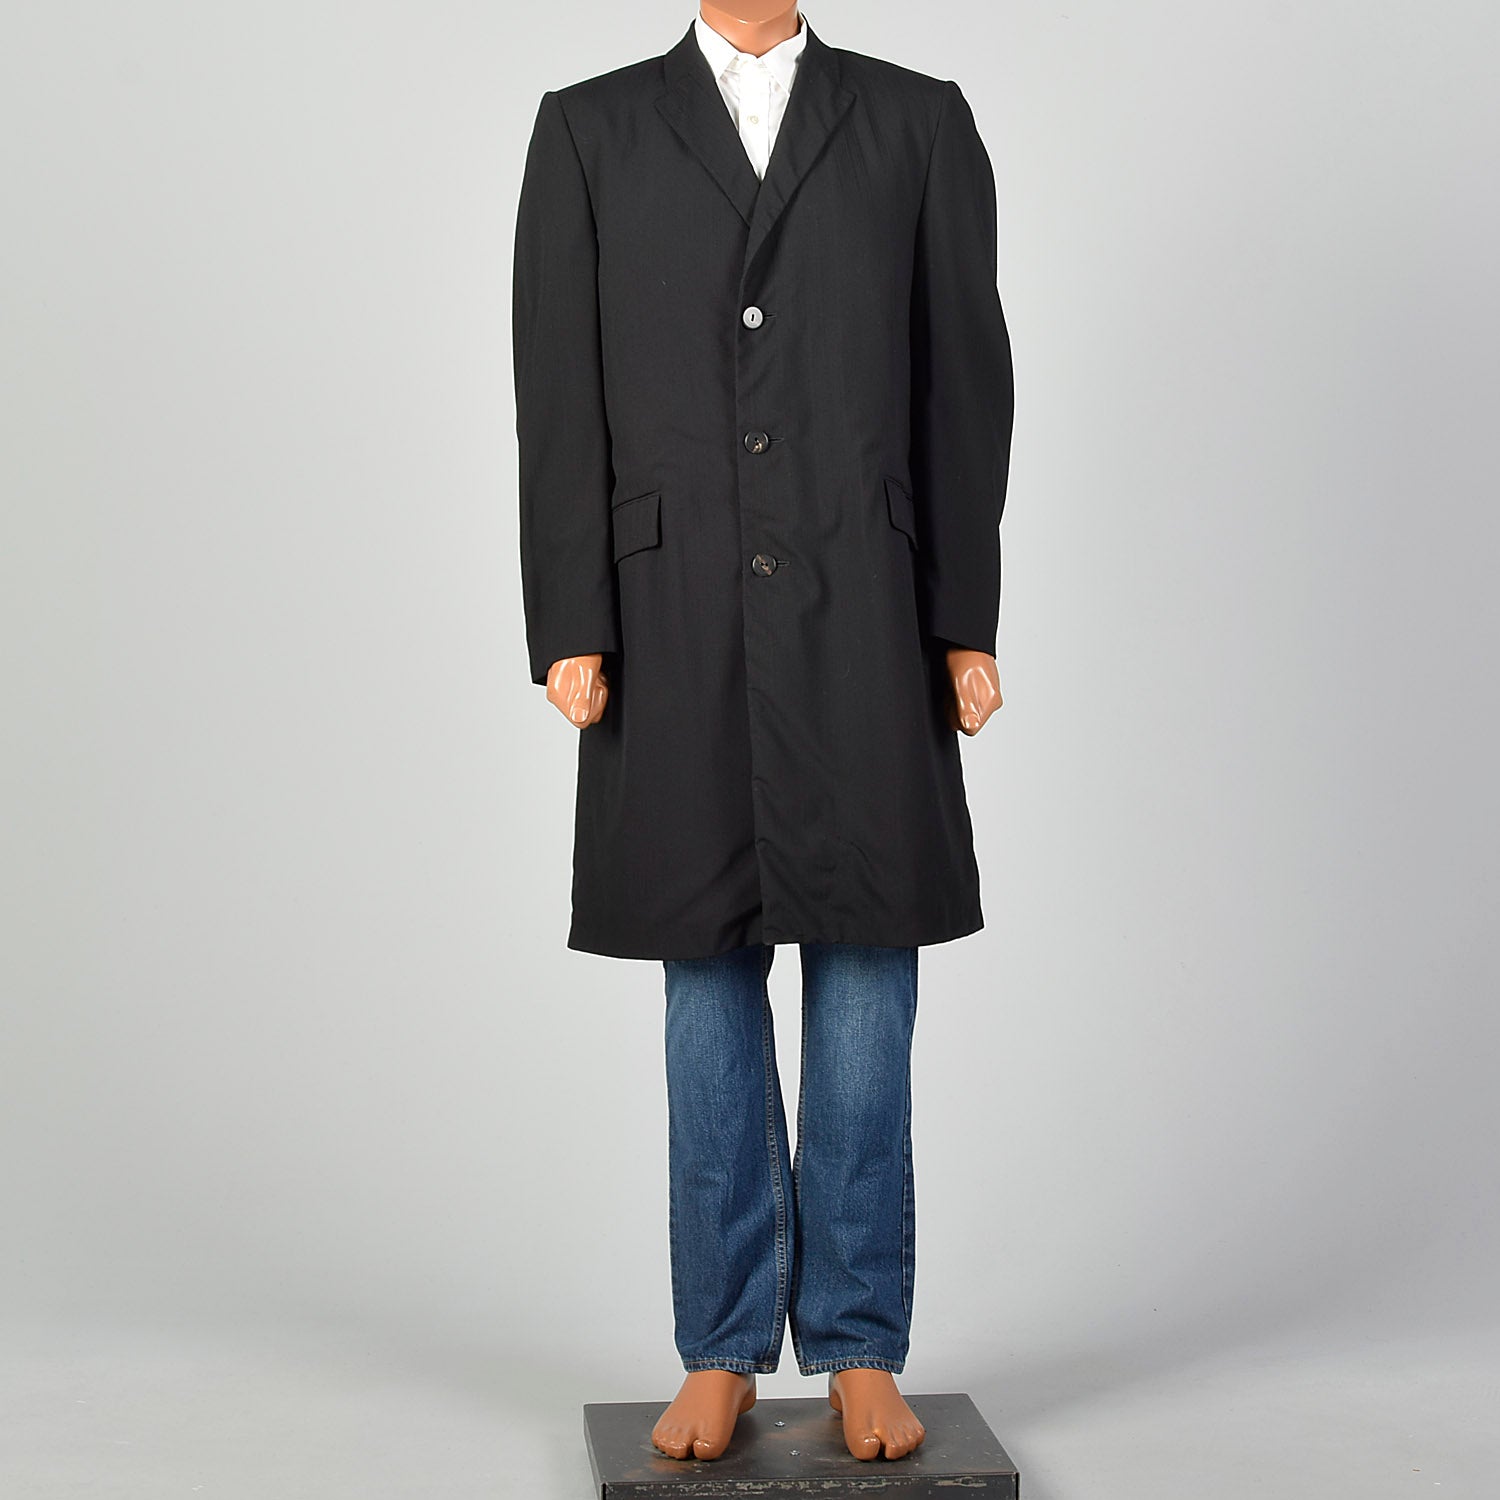 Medium 1960s Mens Black Top Coat